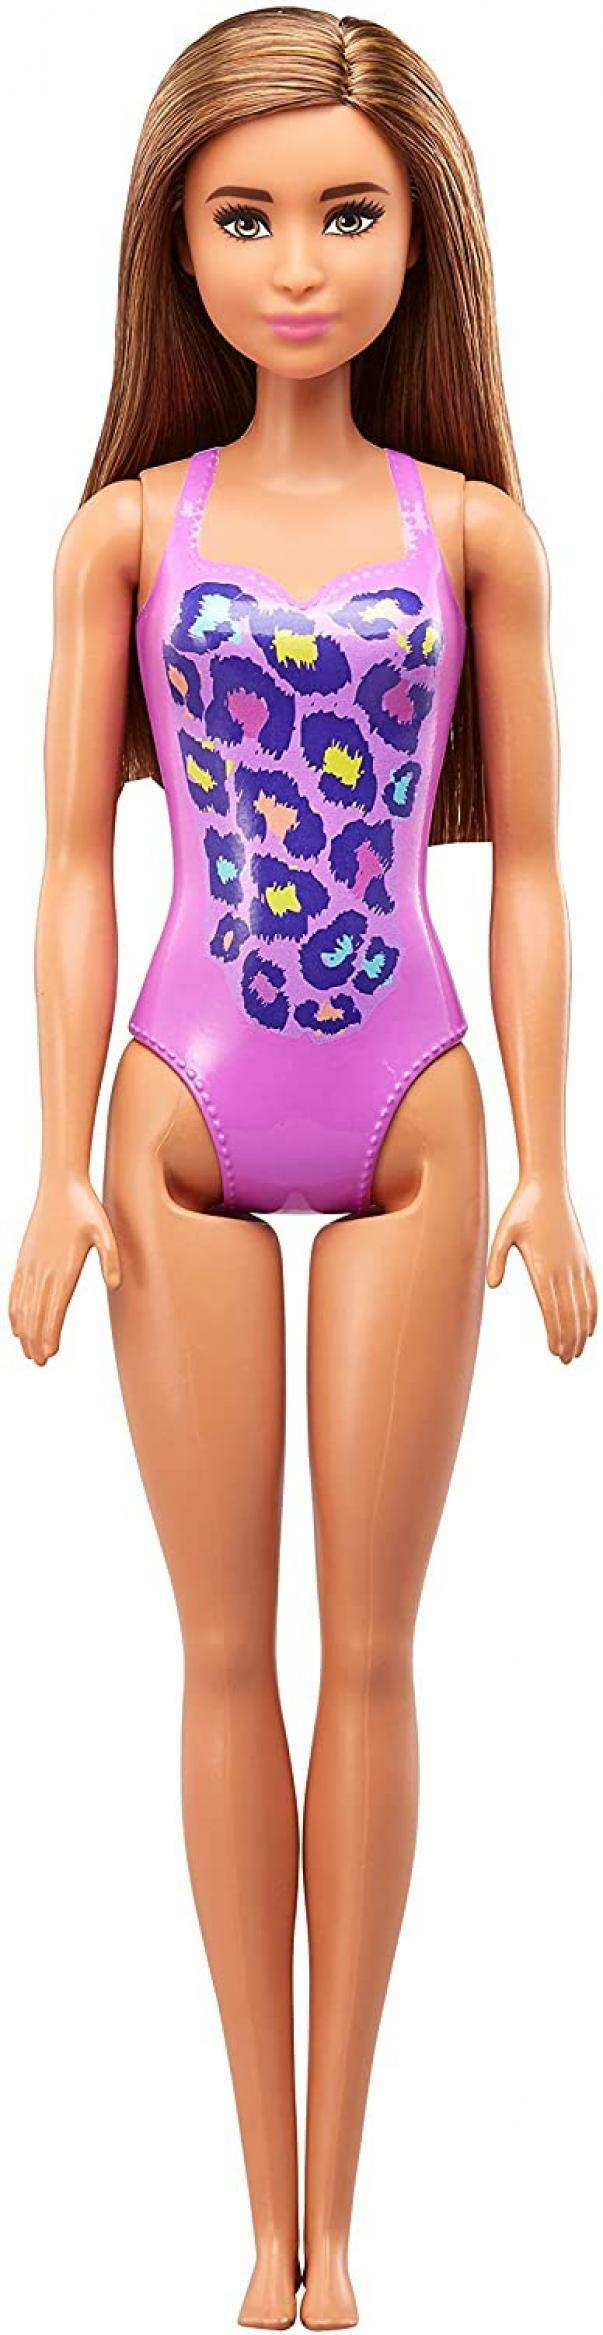 mattel mattel barbie- beach con costume-perfetta per l'estate, colore viola, fjd98